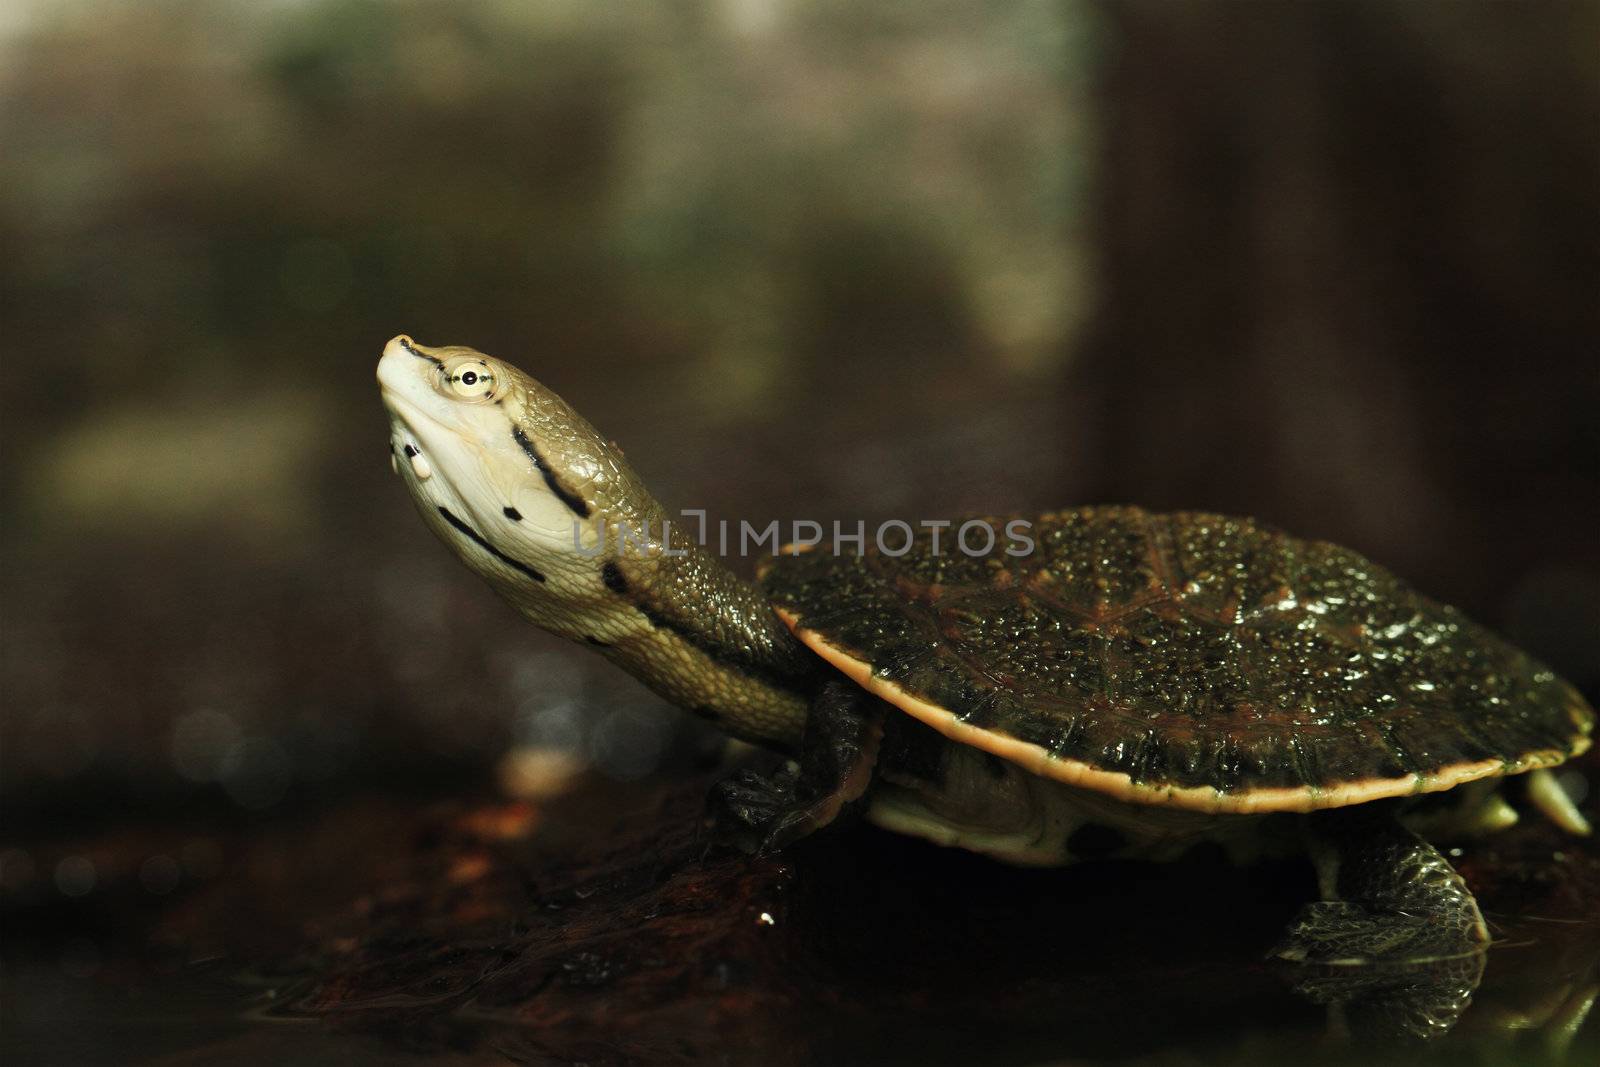 Phrynops hilarii (Spot-bellied side-necked turtle)